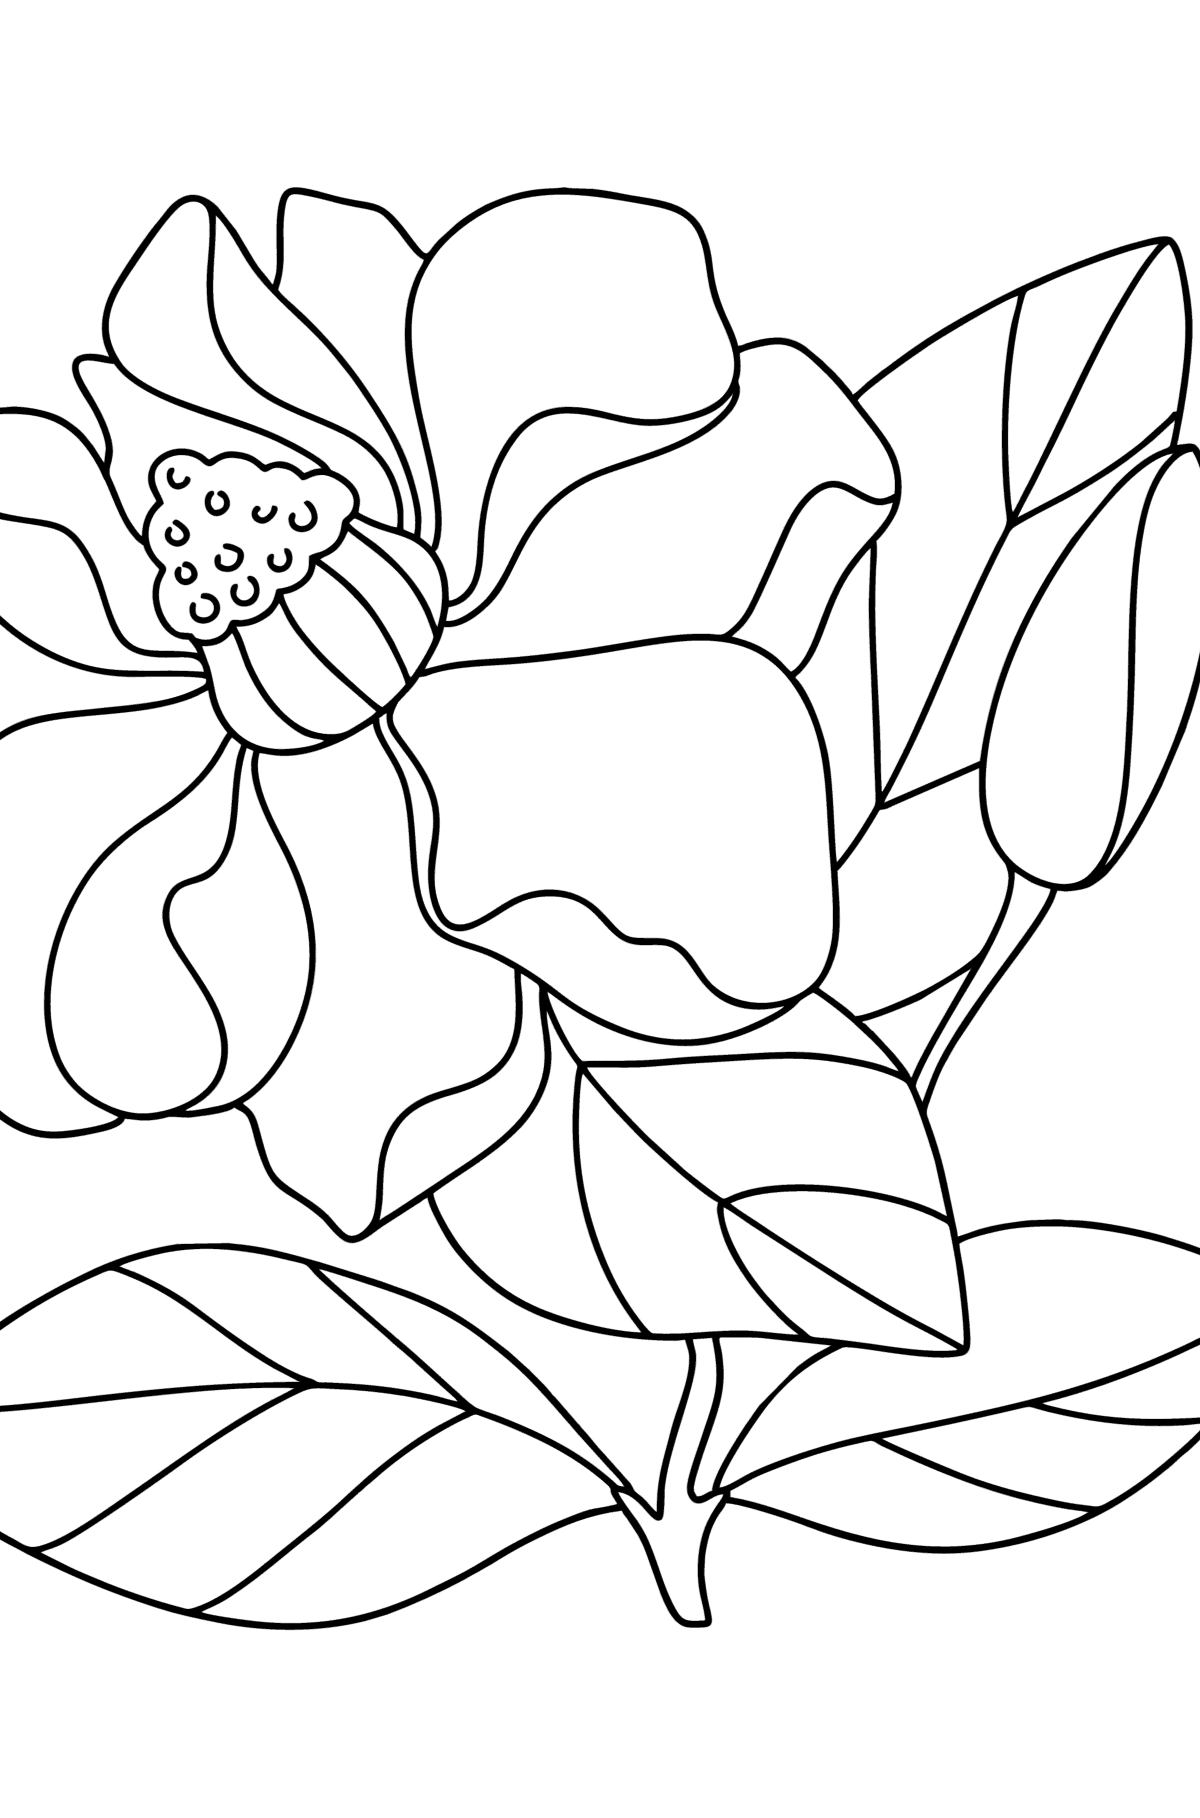 Tegning til fargelegging Magnolia - Tegninger til fargelegging for barn